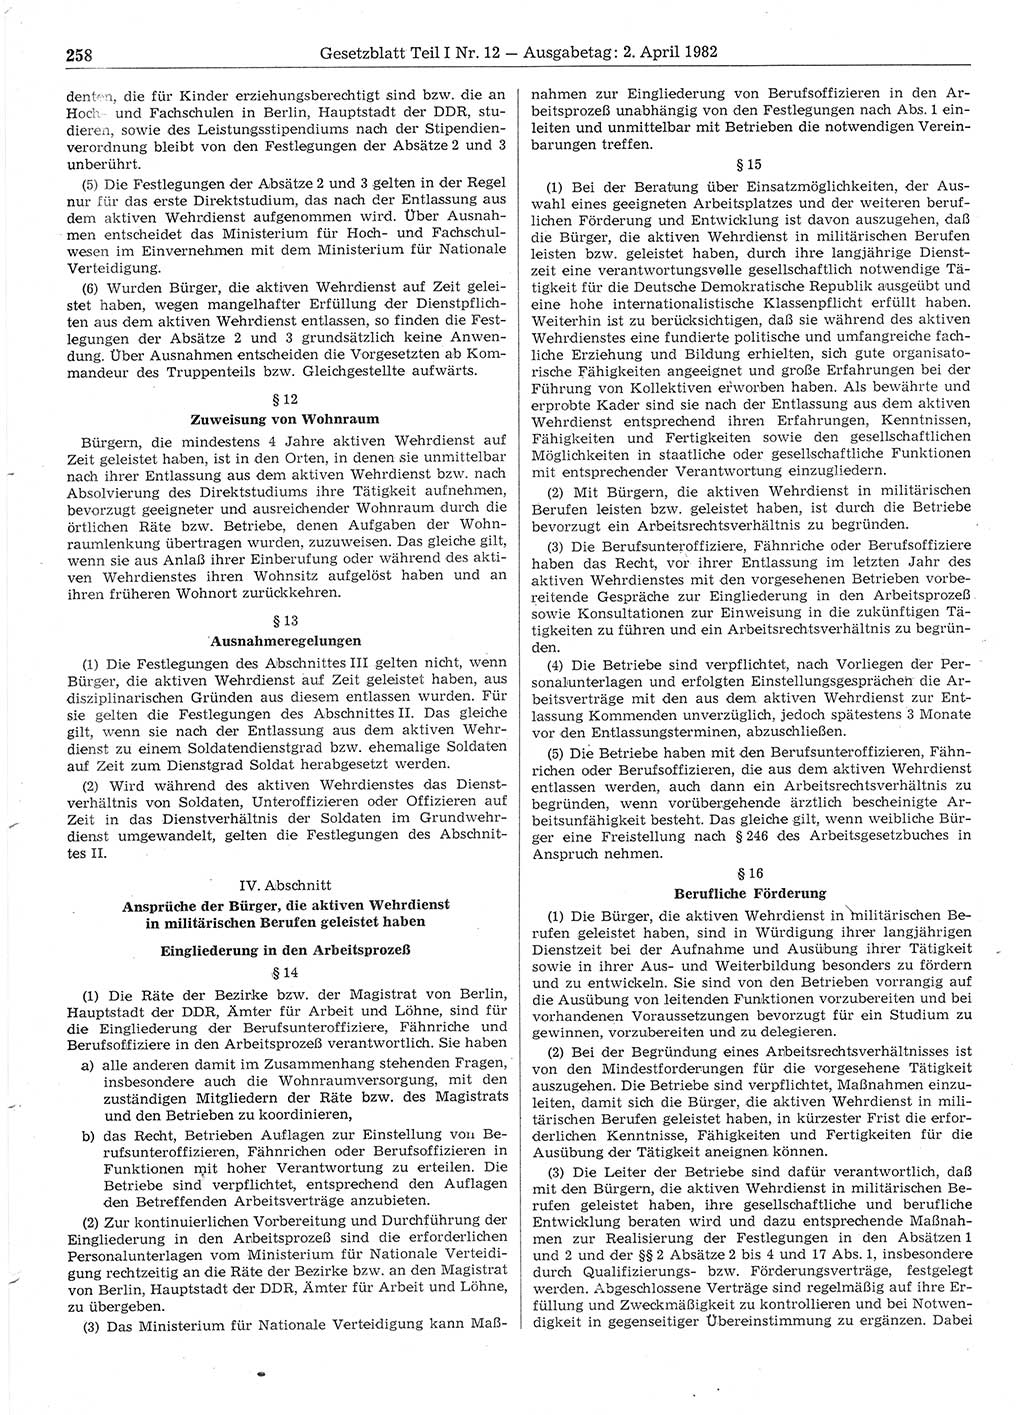 Gesetzblatt (GBl.) der Deutschen Demokratischen Republik (DDR) Teil Ⅰ 1982, Seite 258 (GBl. DDR Ⅰ 1982, S. 258)